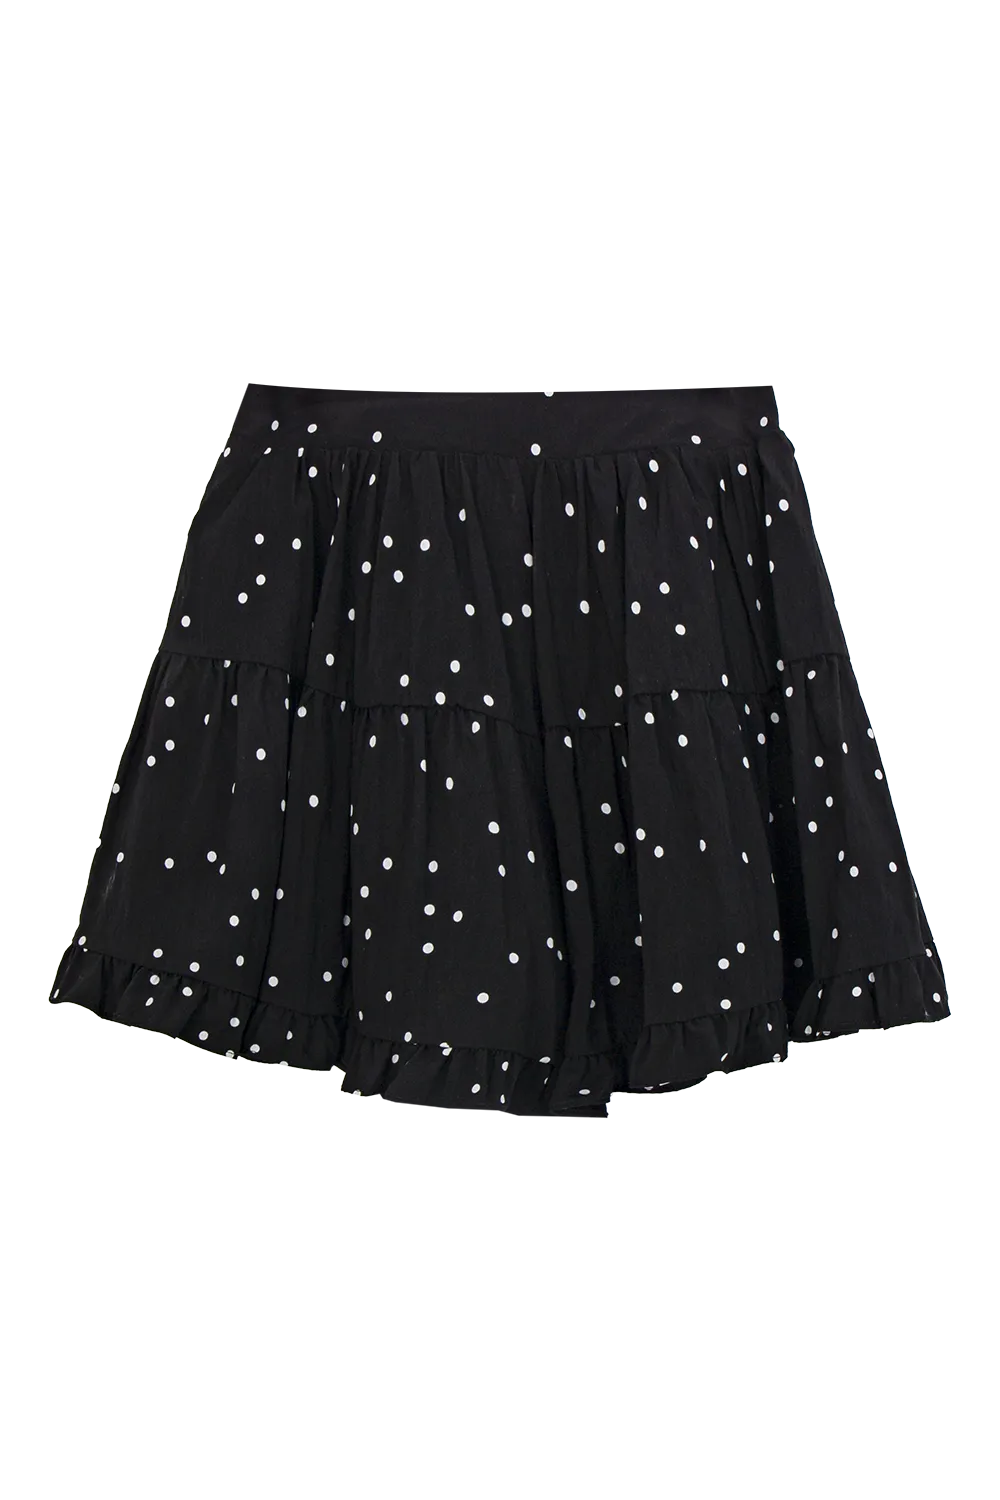 Polka Dot Ruffle Hem Shorts - Playful Flair